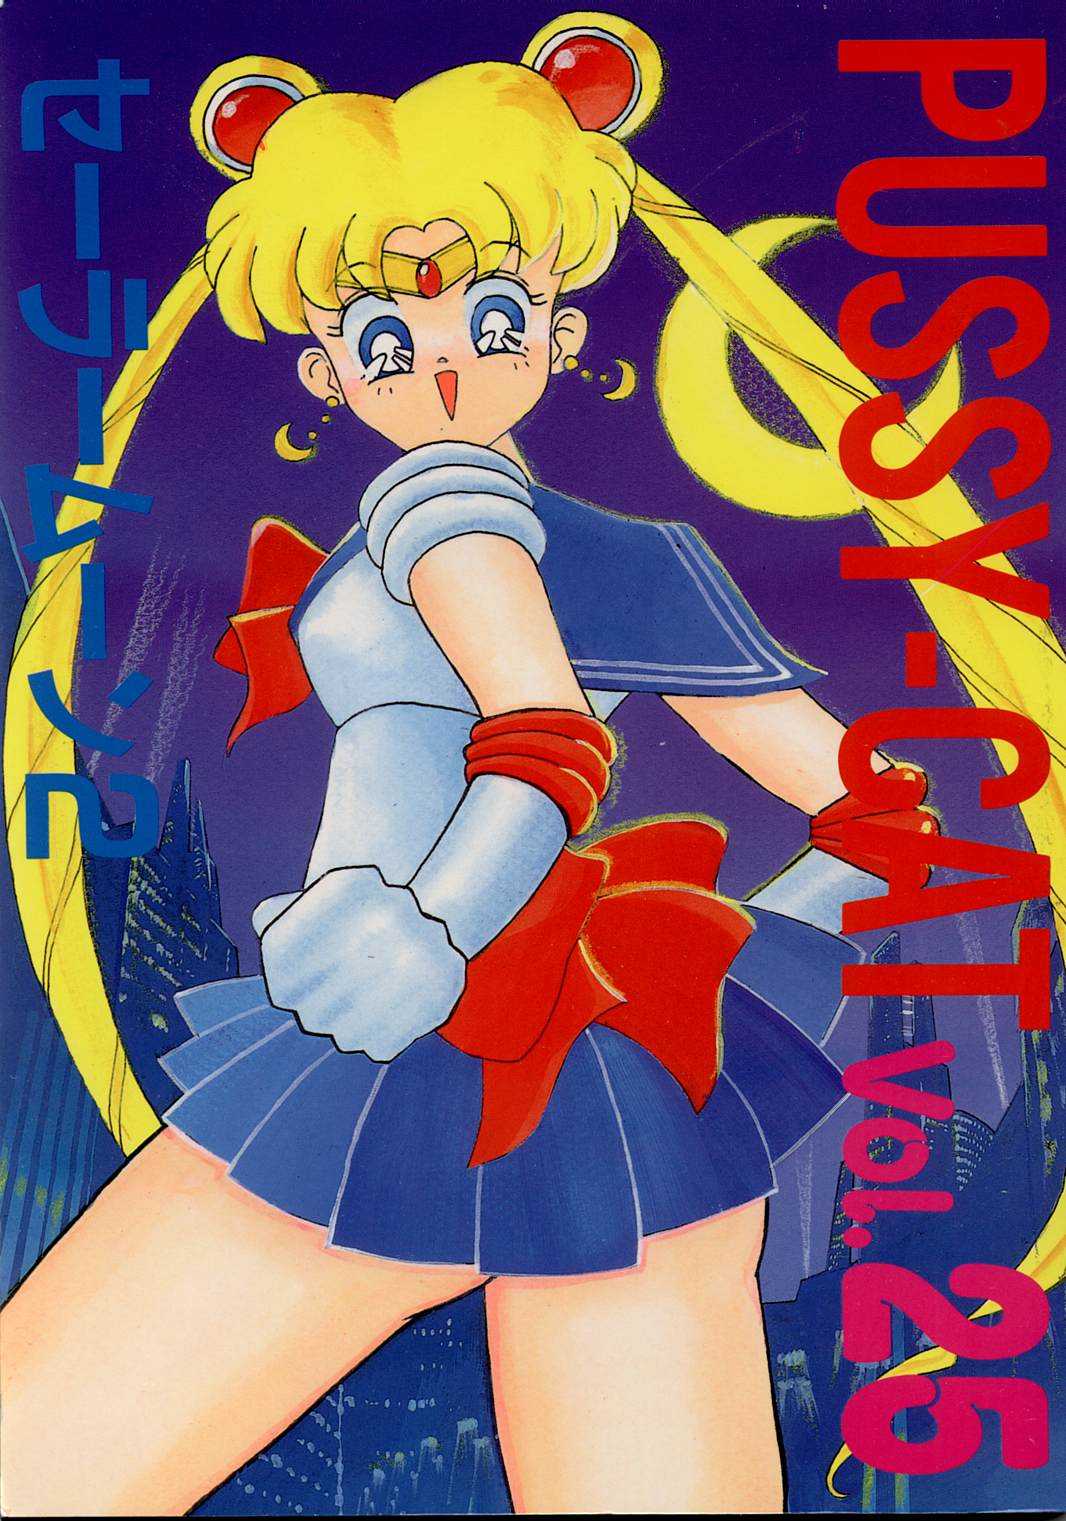 Pussy-Cat Vol. 25 [Sailor Moon] 